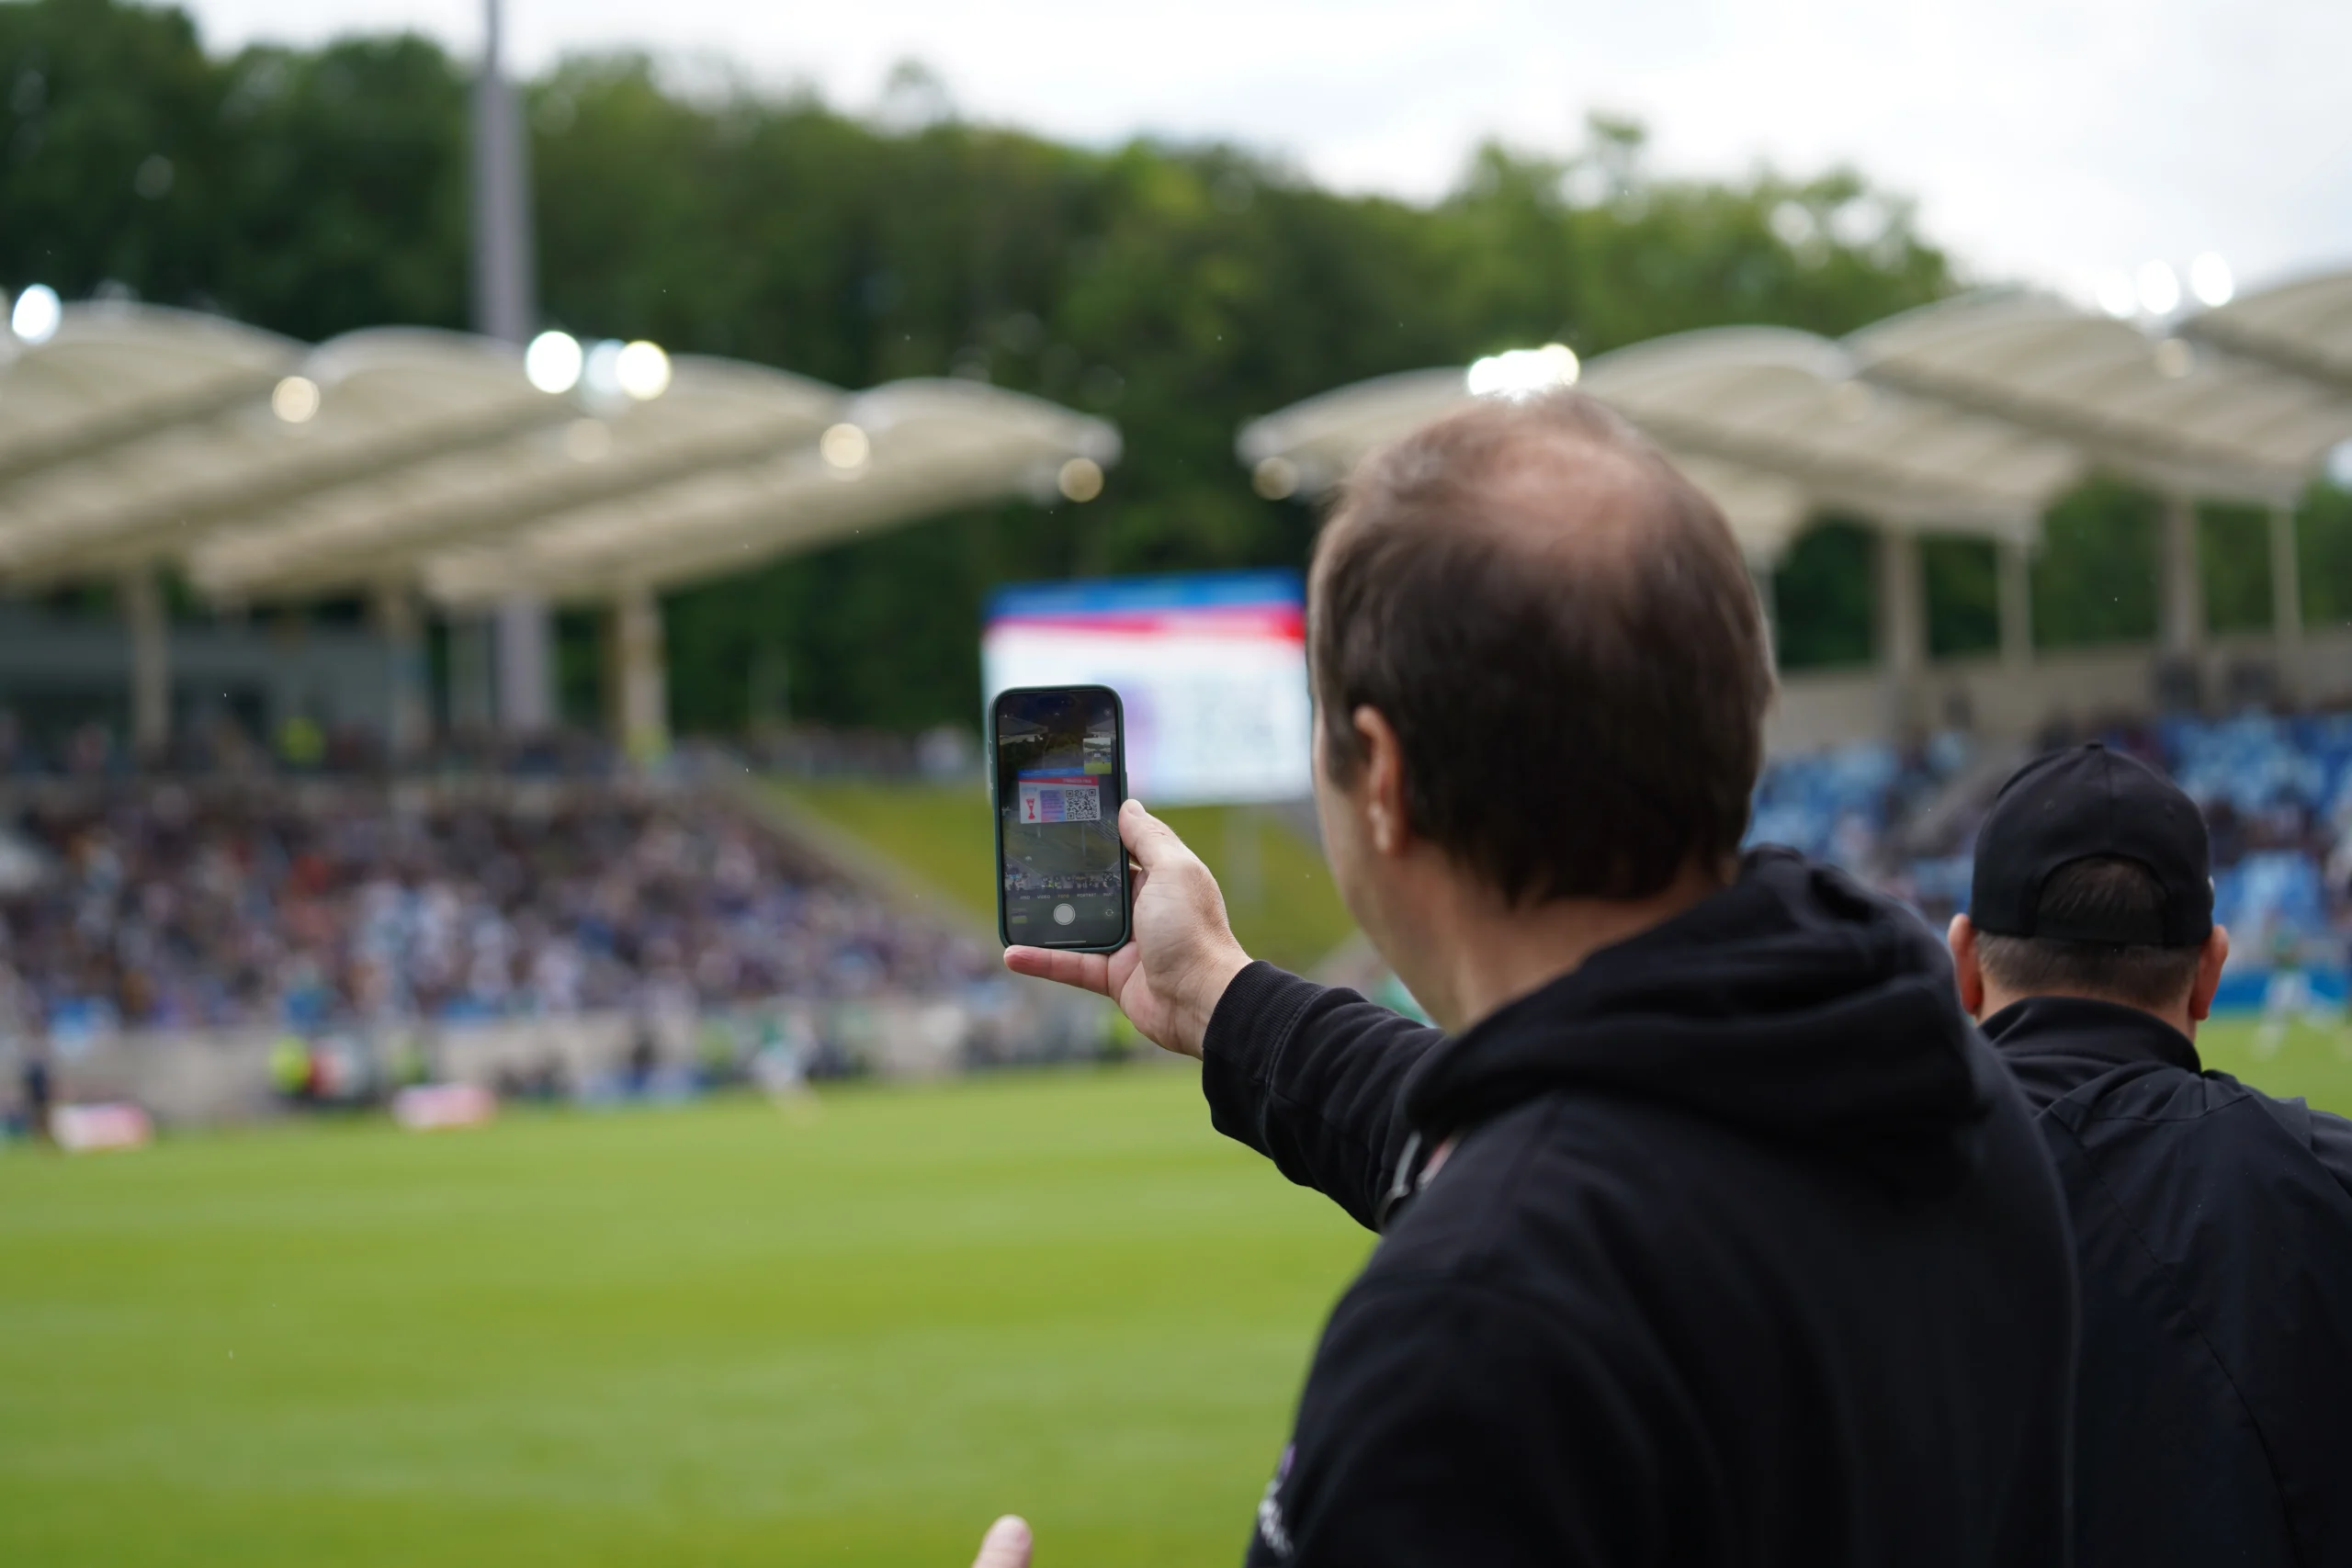 A soccer fan scanning a QR code off a jumbotron